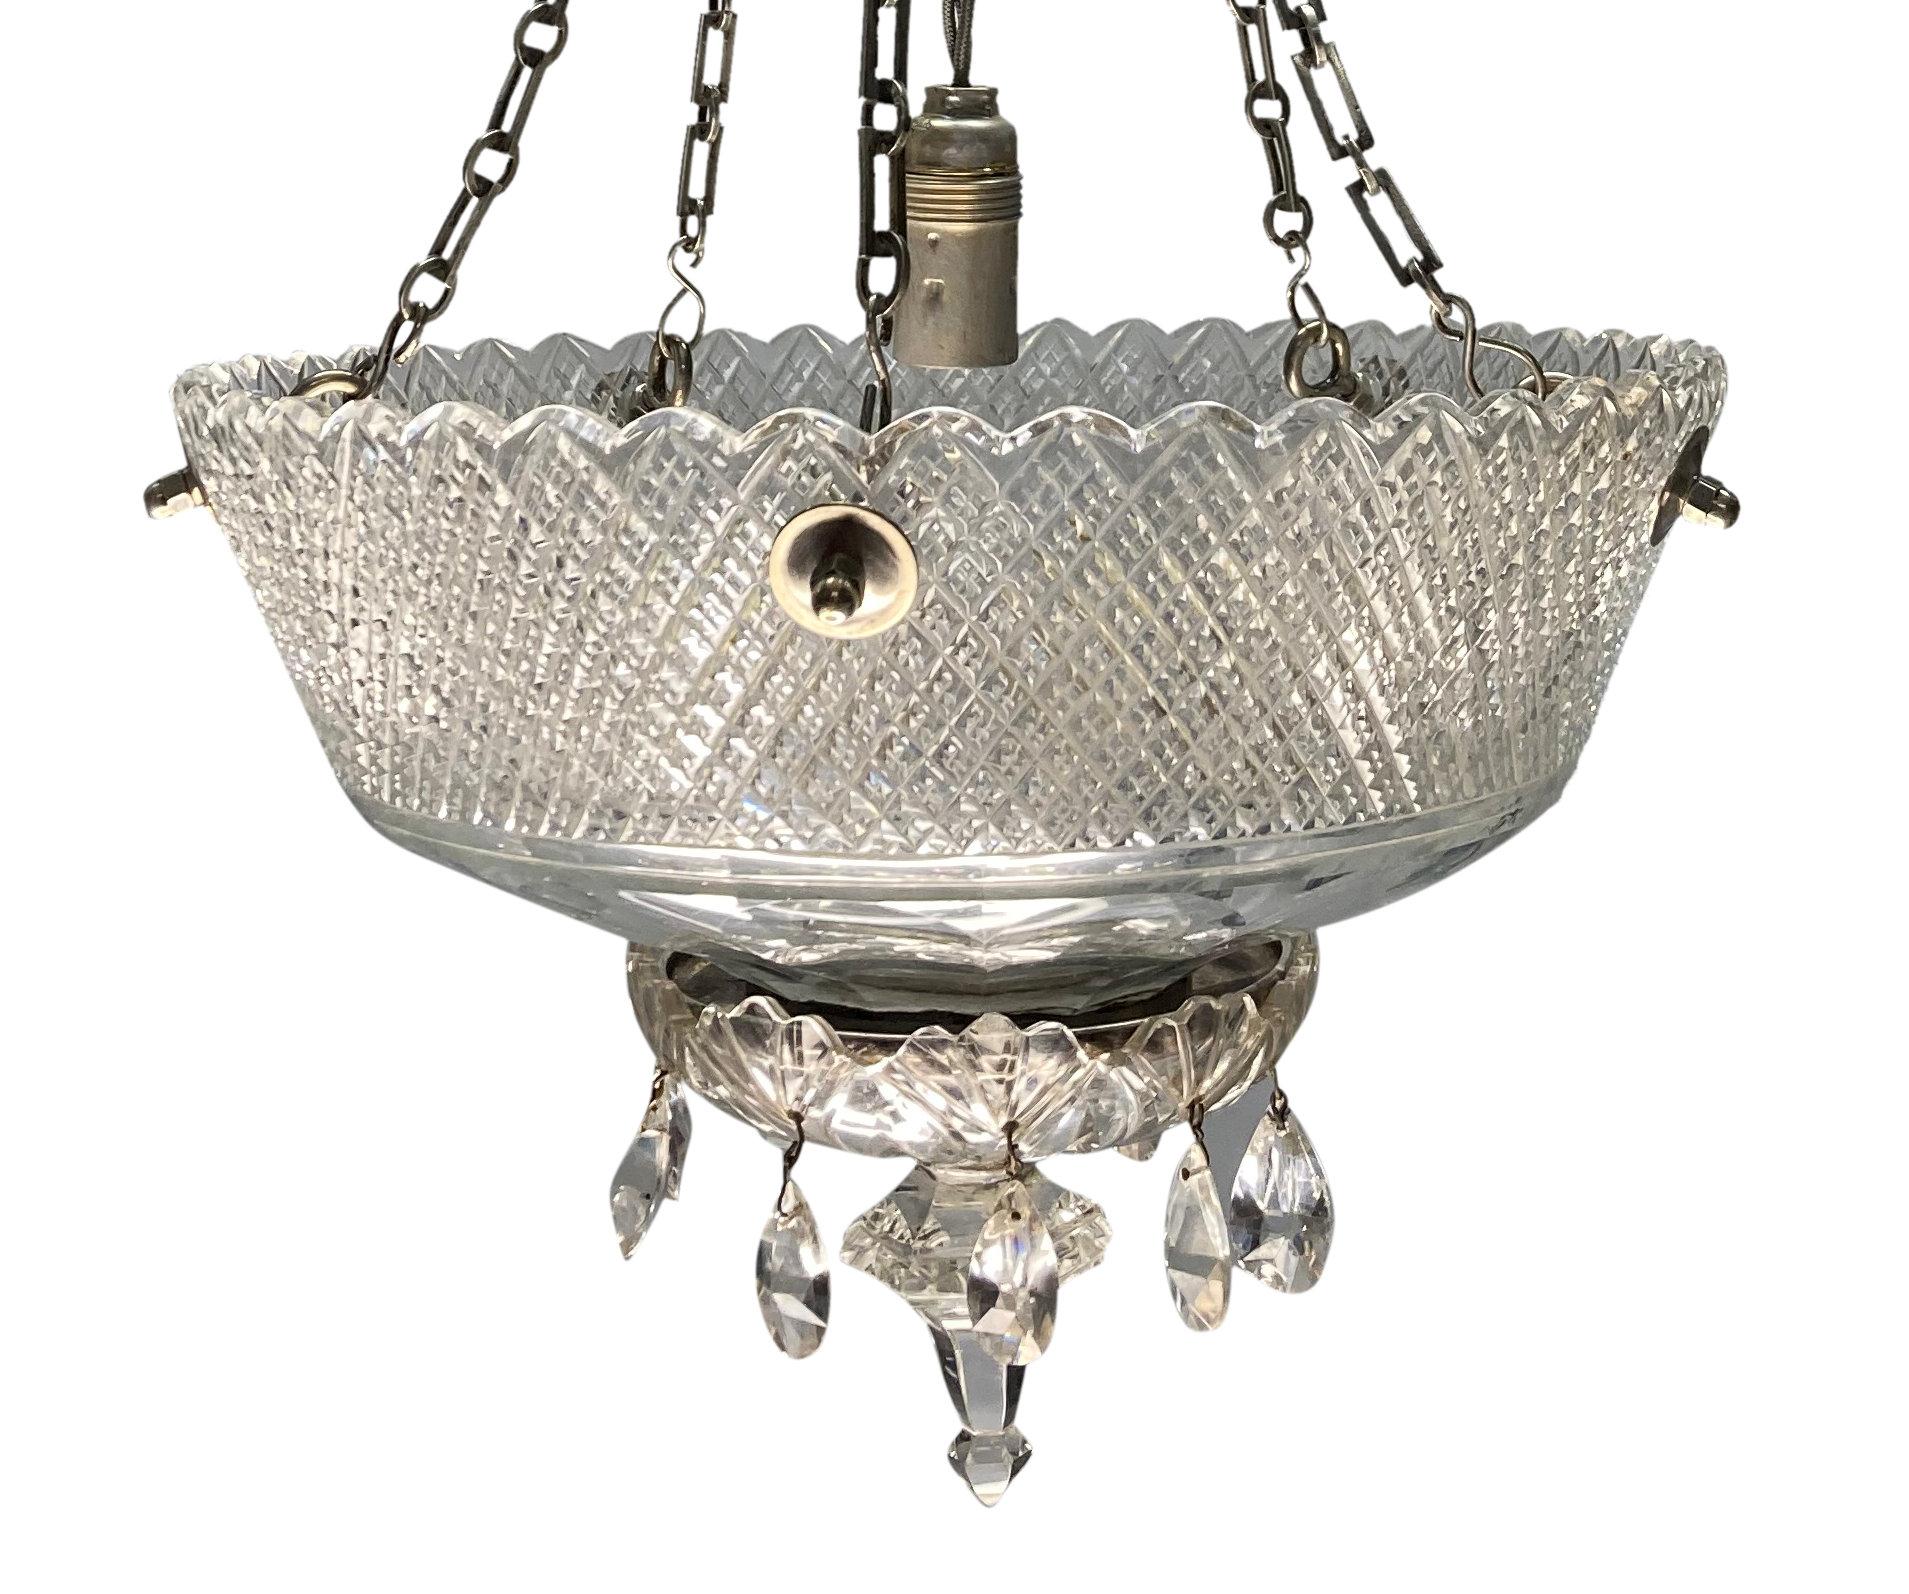 Lampe à poser en verre taillé de l'époque édouardienne, avec chaînes et accessoires en bronze argenté.